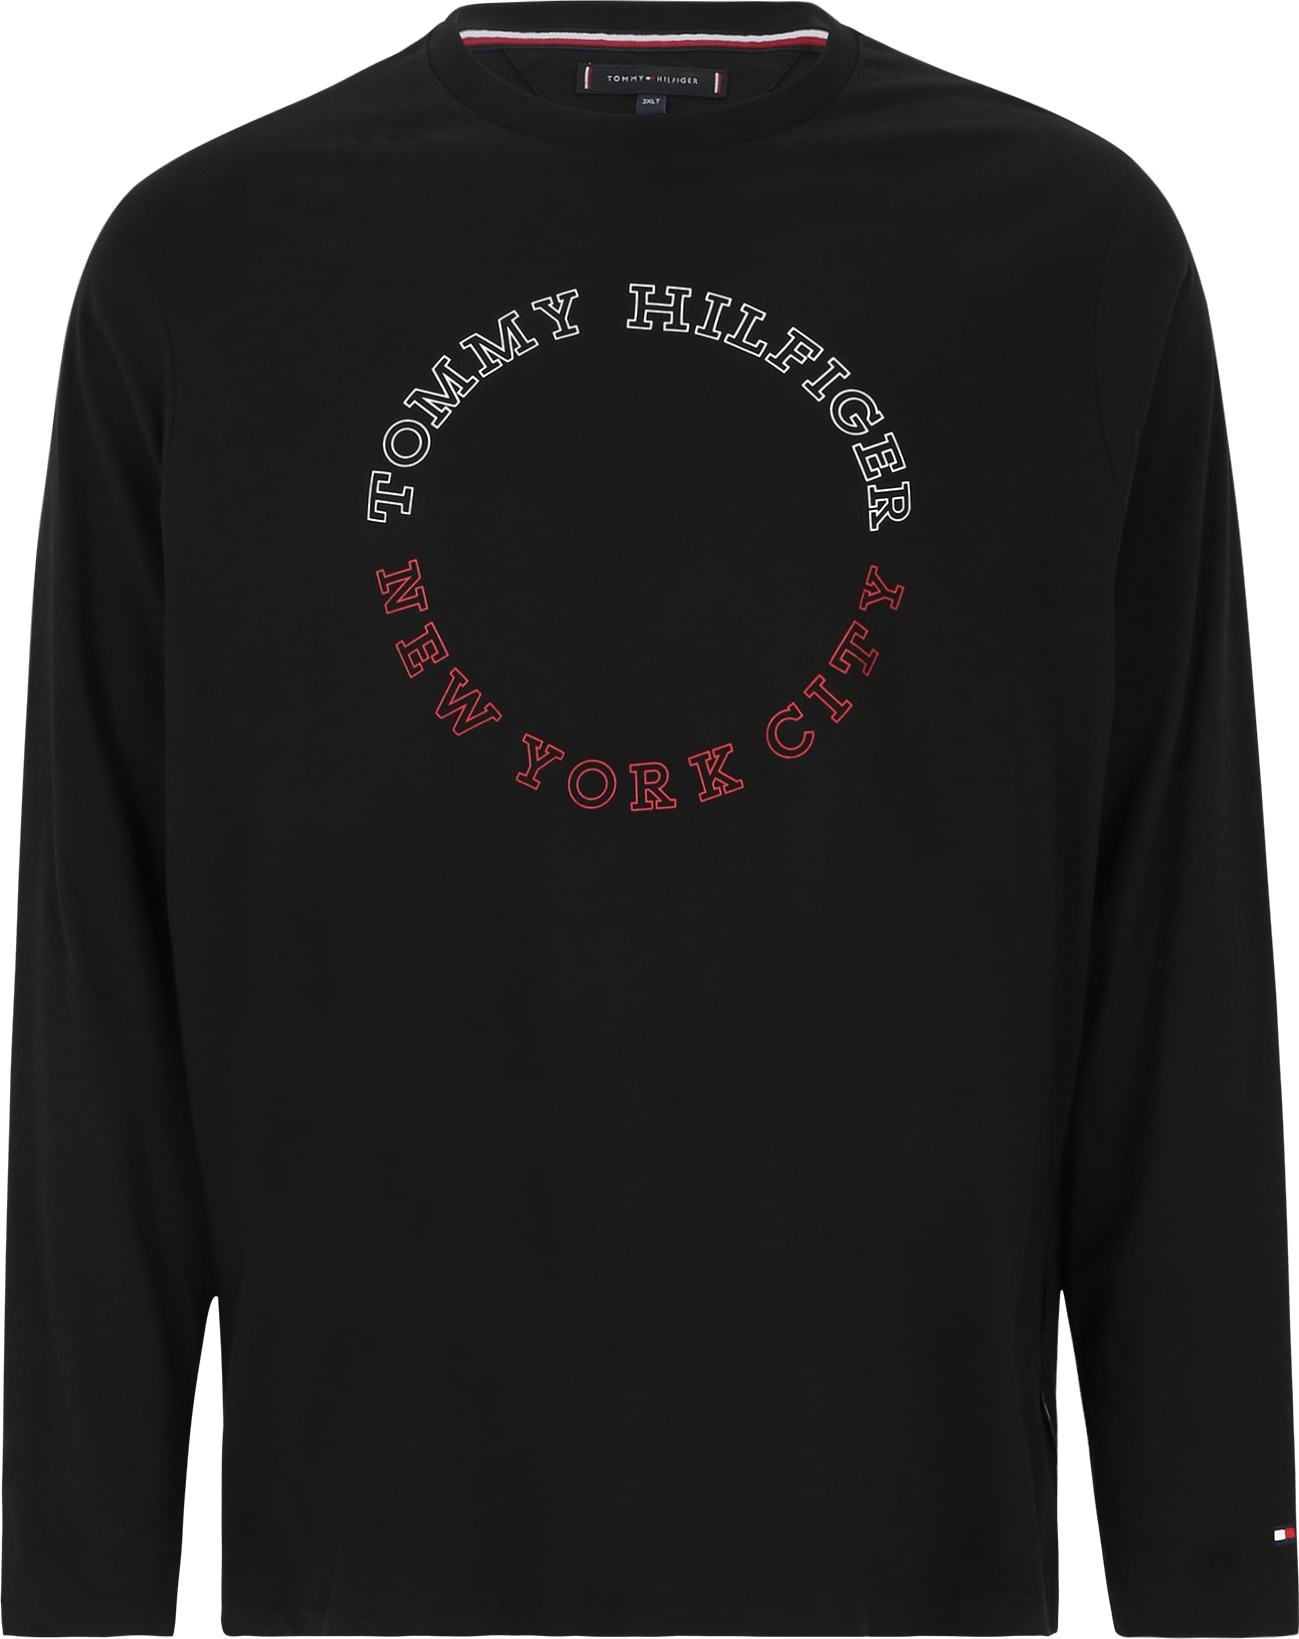 Tričko Tommy Hilfiger Big & Tall námořnická modř / červená / černá / bílá